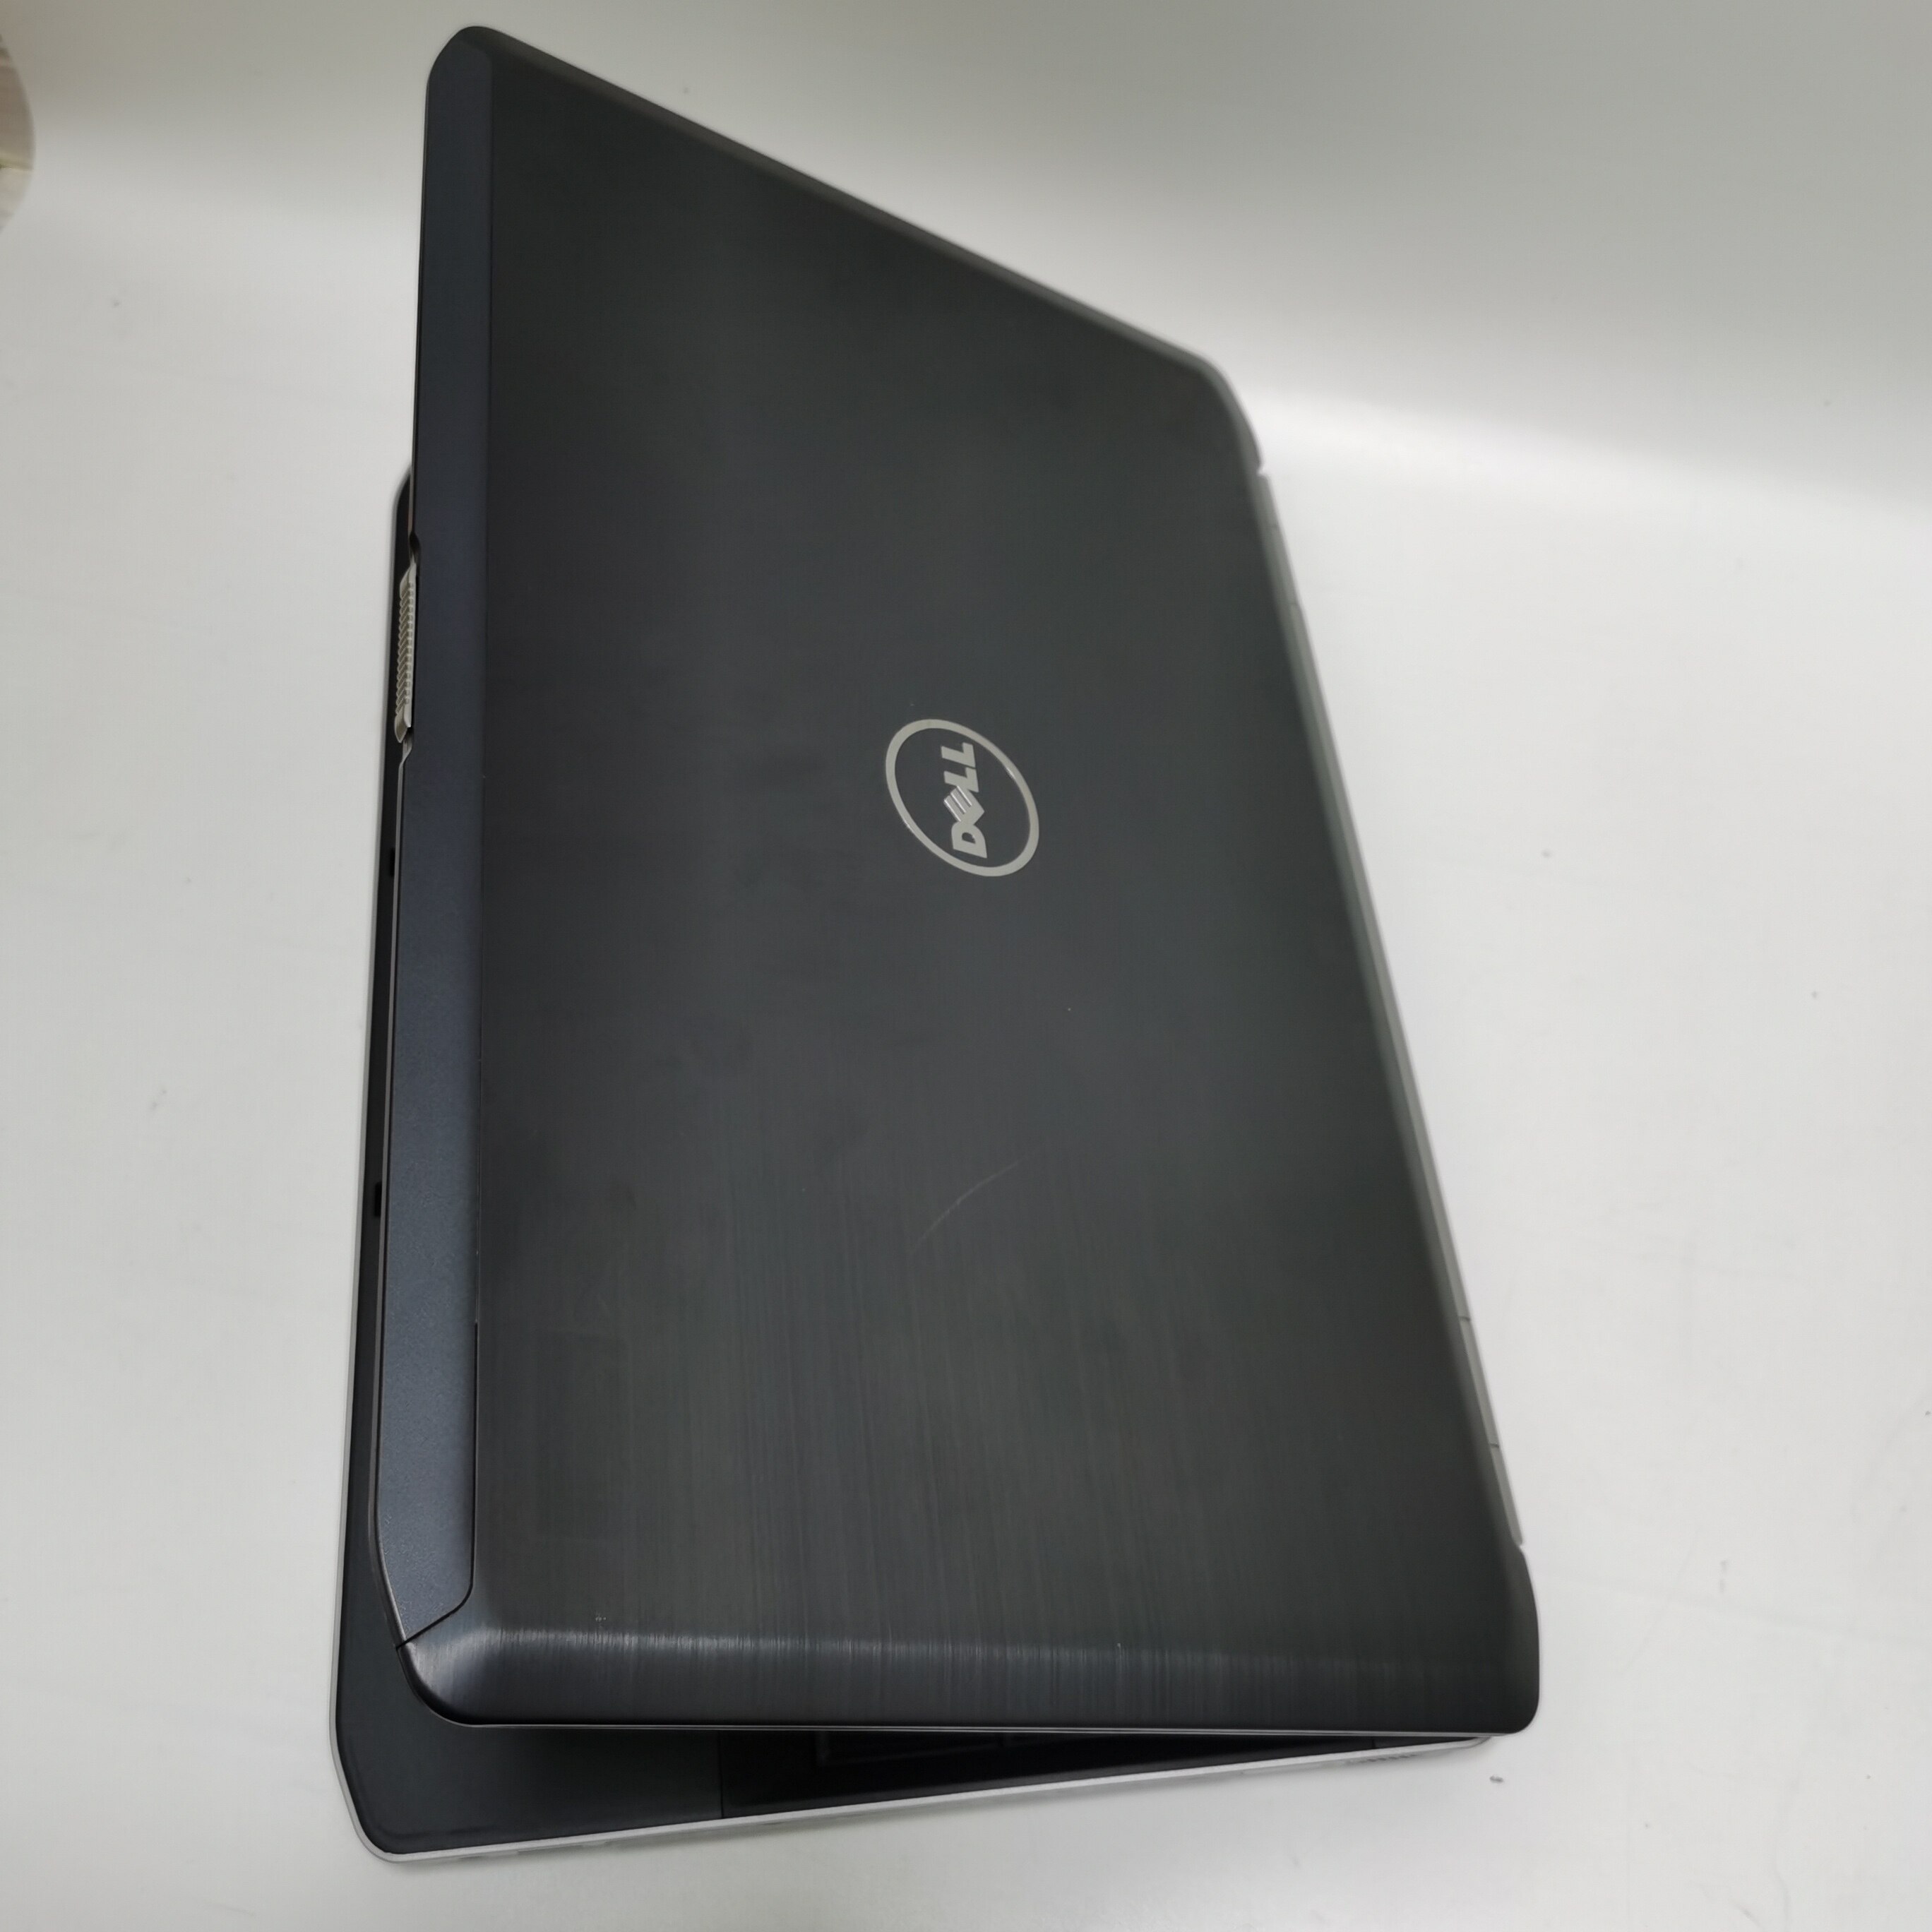 รูปภาพเพิ่มเติมของ โน๊ตบุ๊ค notebook Dell E5530 i5 gen3 15.6 inch  //  Lenovo ThinkPad  M14 โน๊ตบุ๊คมือสอง  โน๊ตบุ๊คถูกๆๆ  คอมพิวเตอร์  คอม  laptop pc